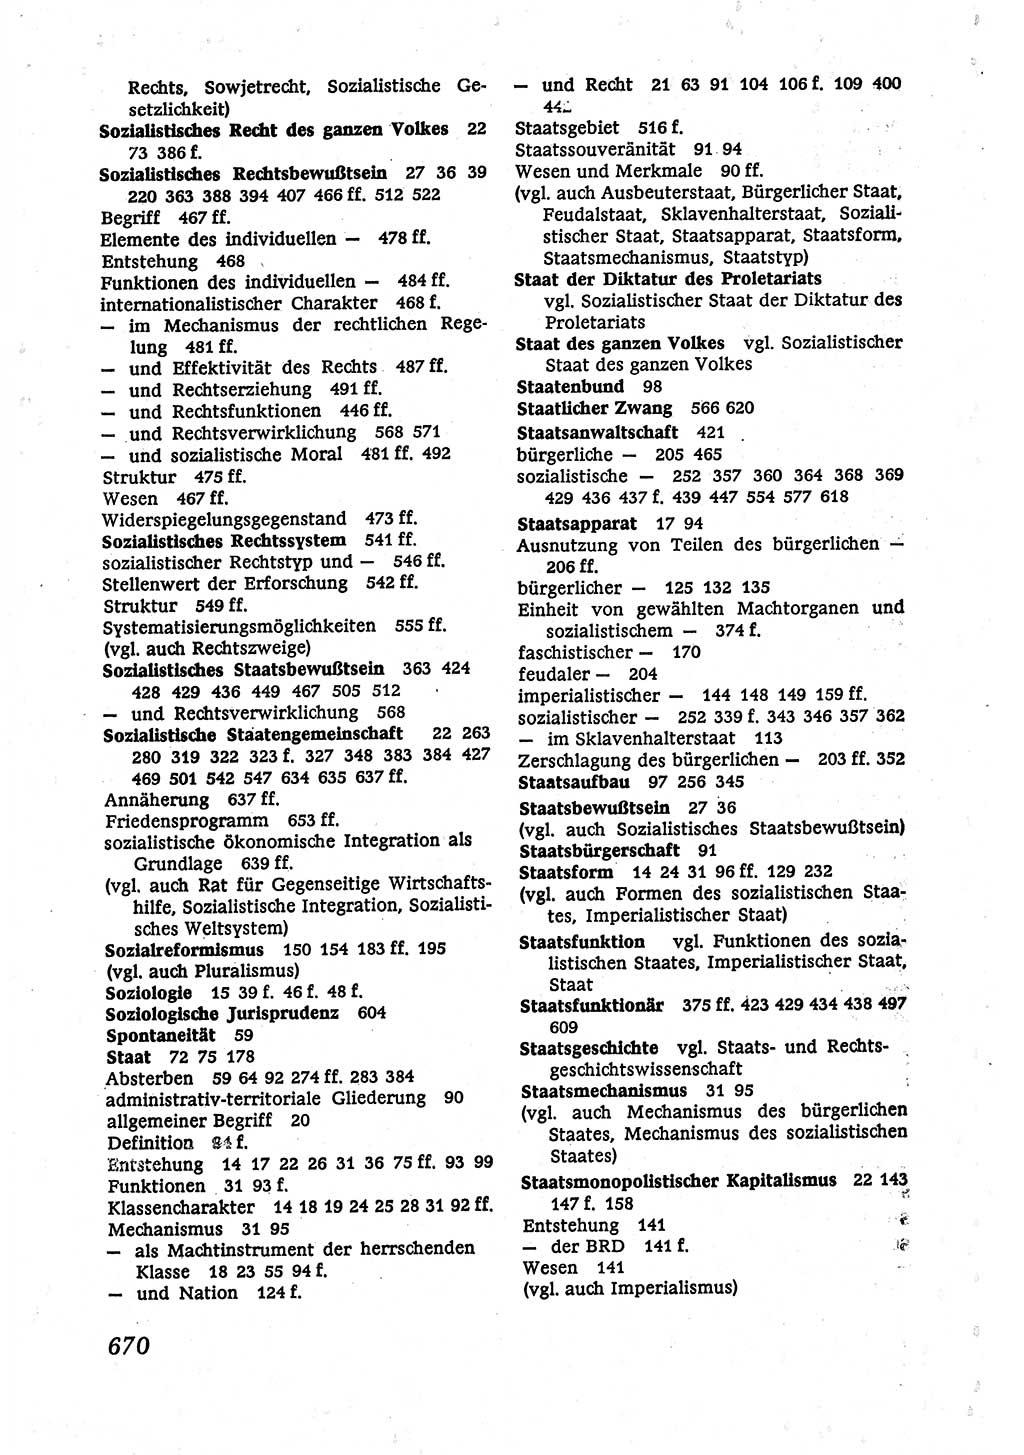 Marxistisch-leninistische (ML) Staats- und Rechtstheorie [Deutsche Demokratische Republik (DDR)], Lehrbuch 1980, Seite 670 (ML St.-R.-Th. DDR Lb. 1980, S. 670)